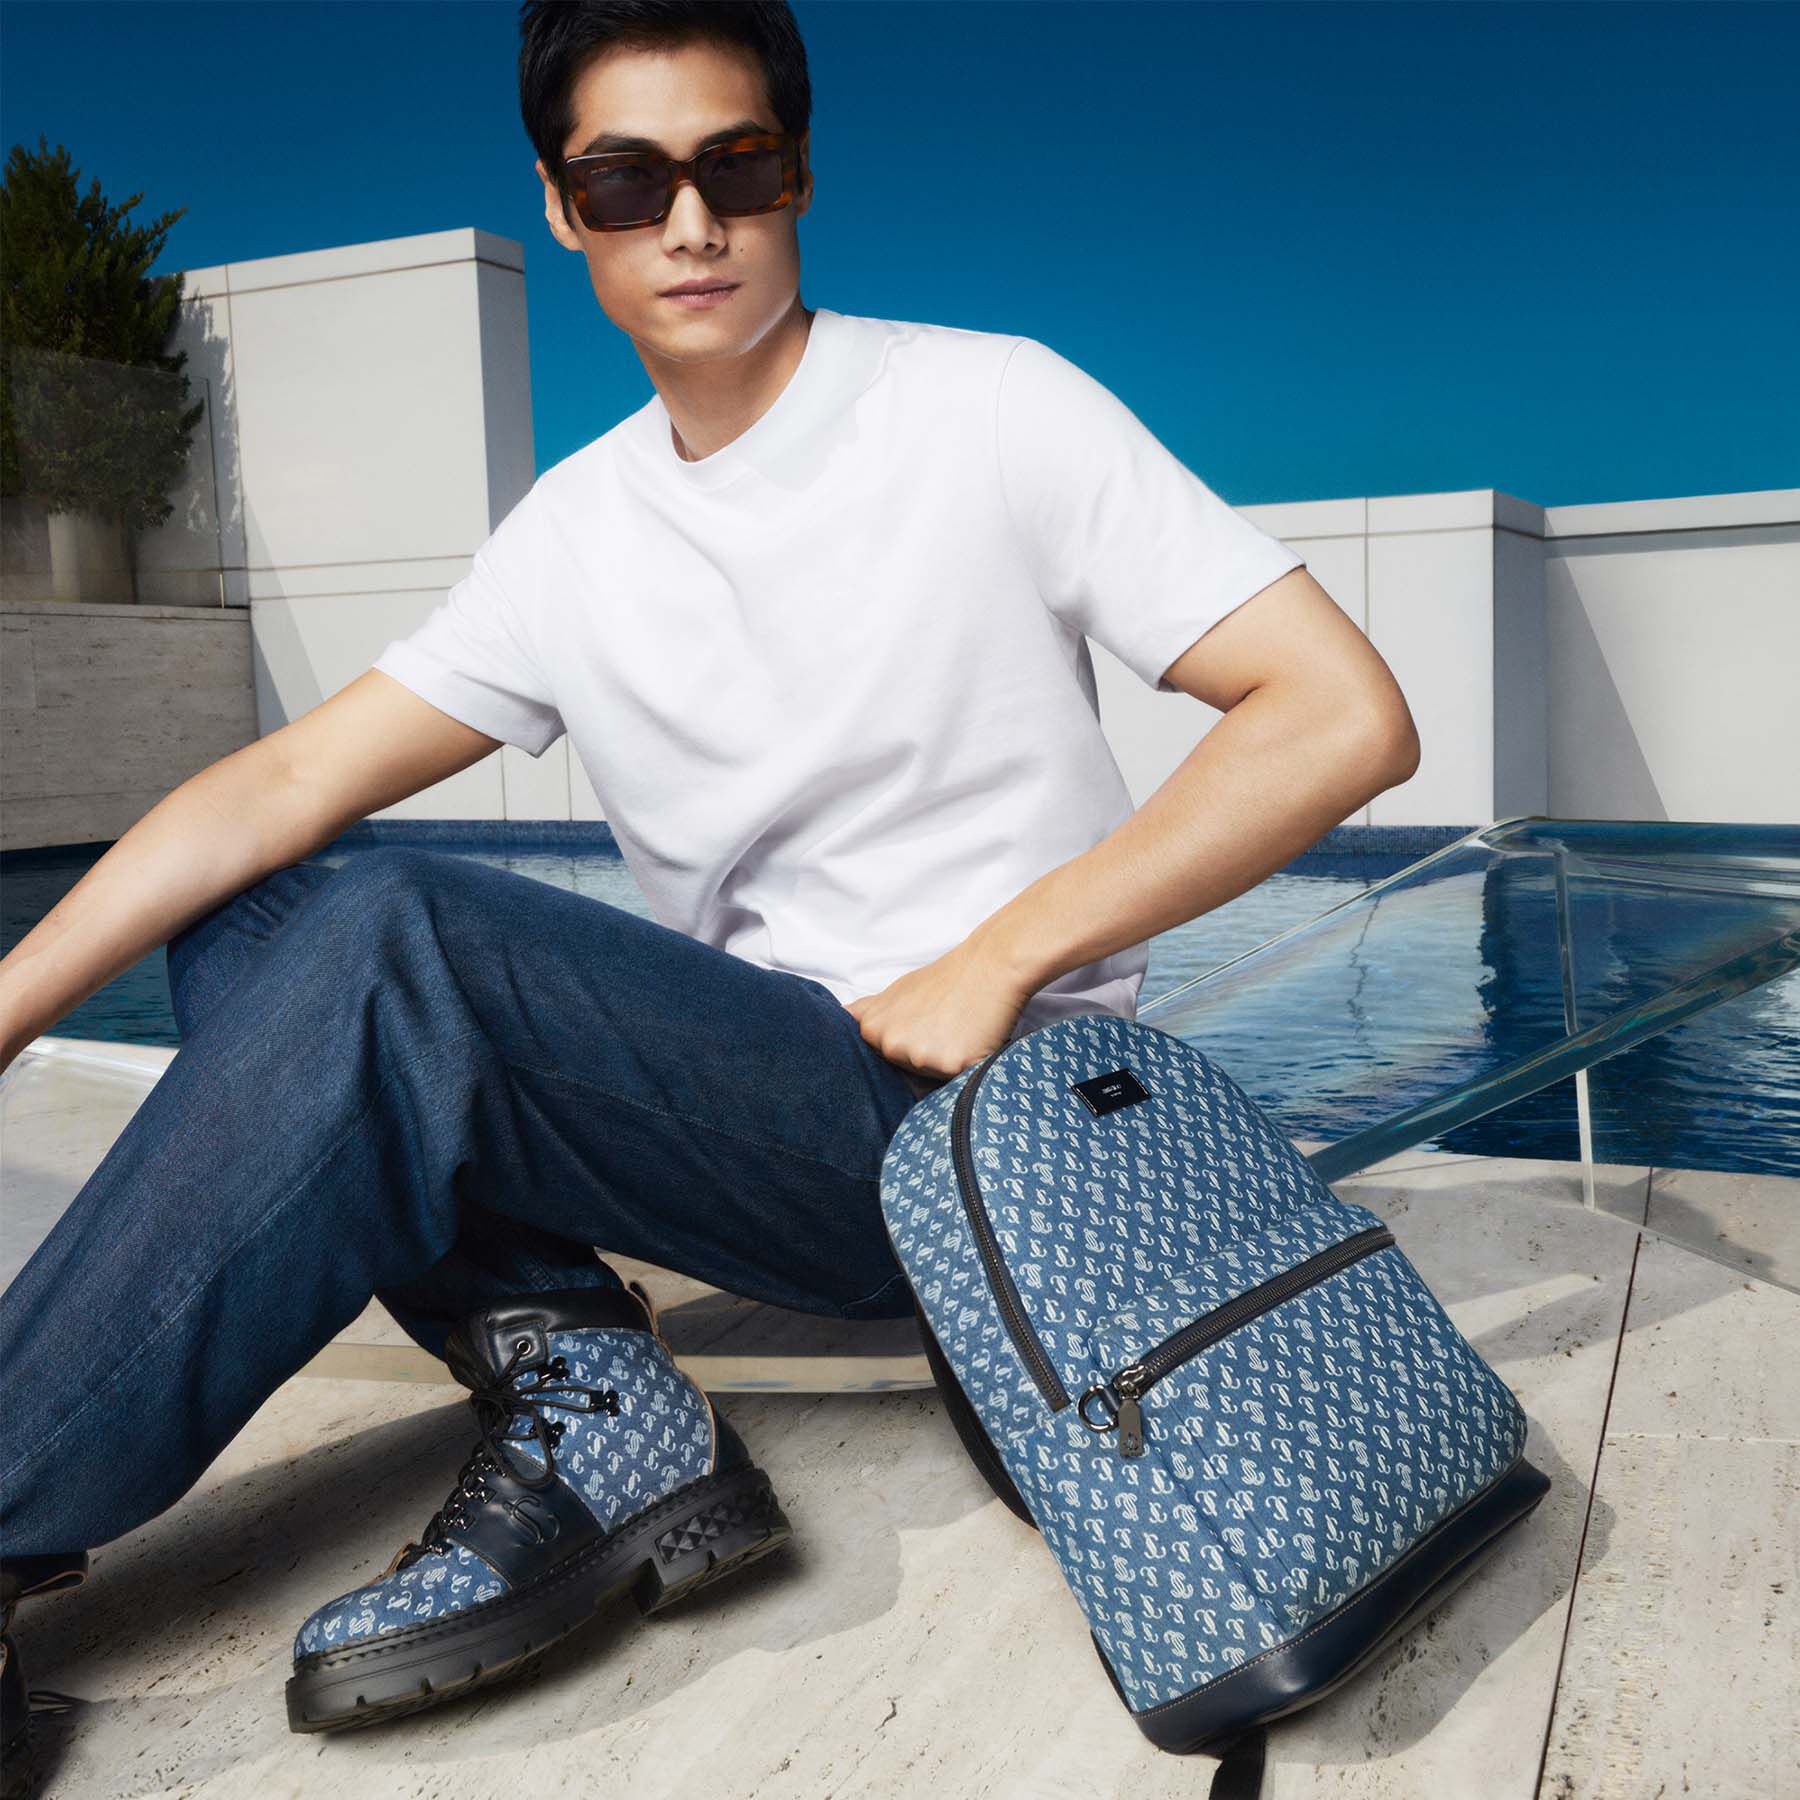 39 Best Louis Vuitton Backpack ideas - Pinterest